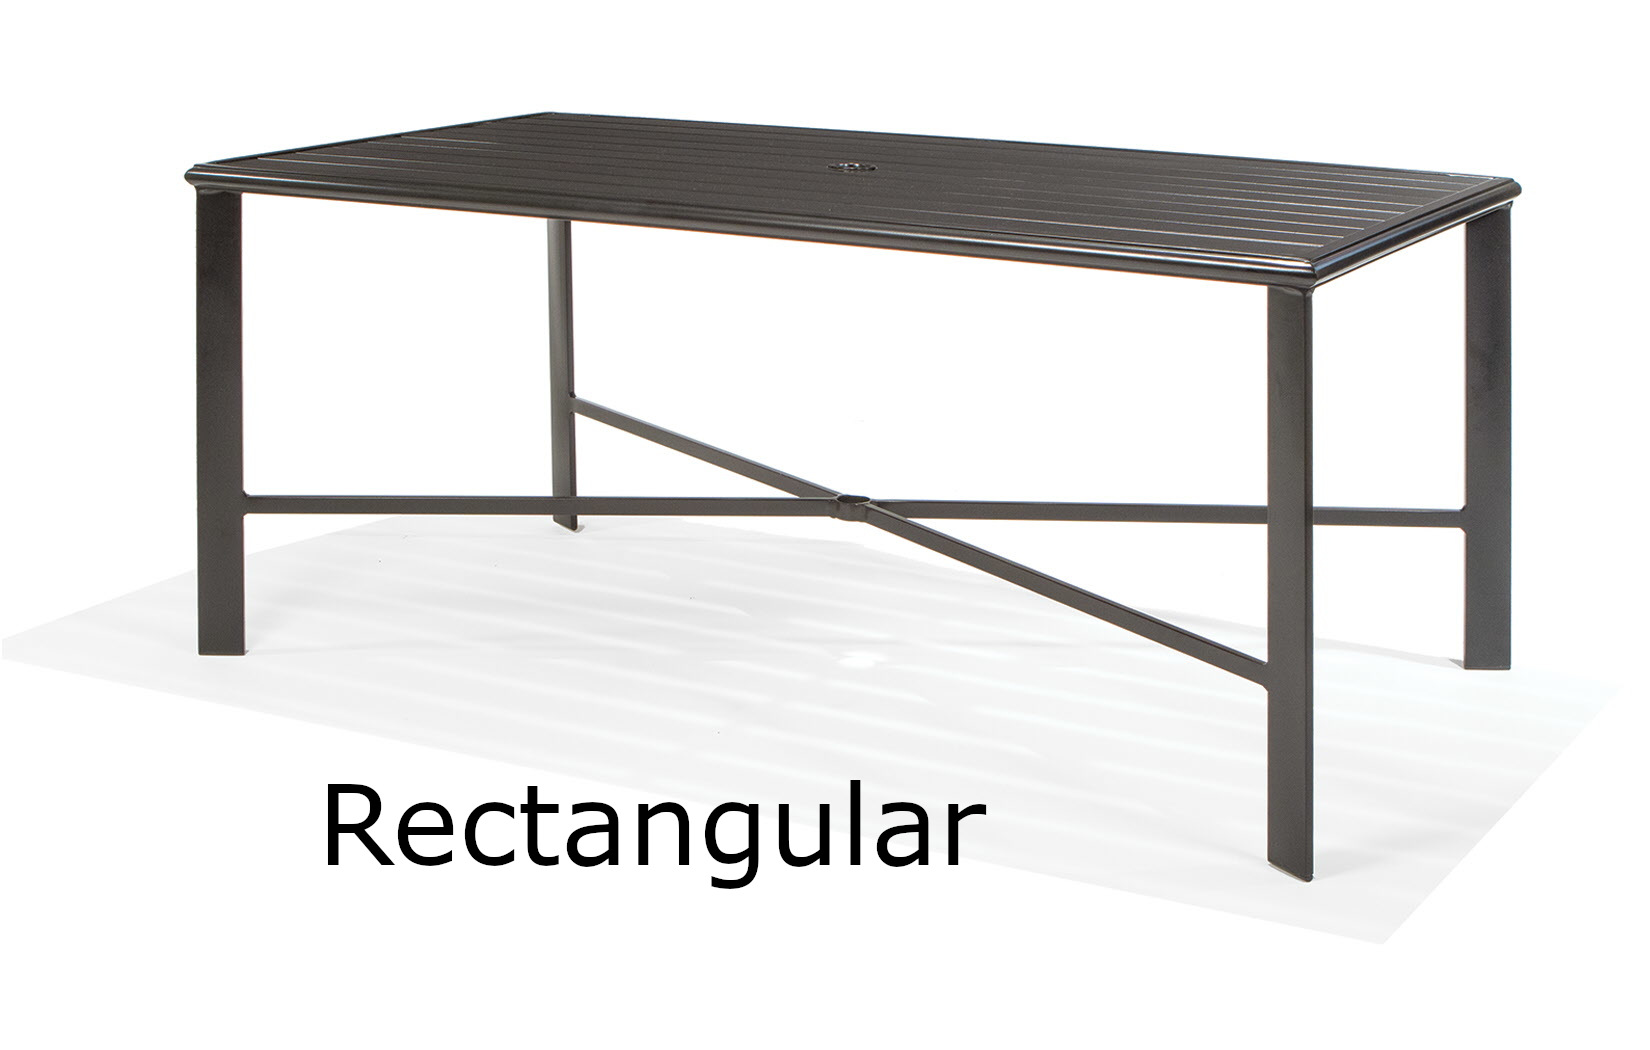 Rectangular Fully Welded Aluminum Slat Dining Table